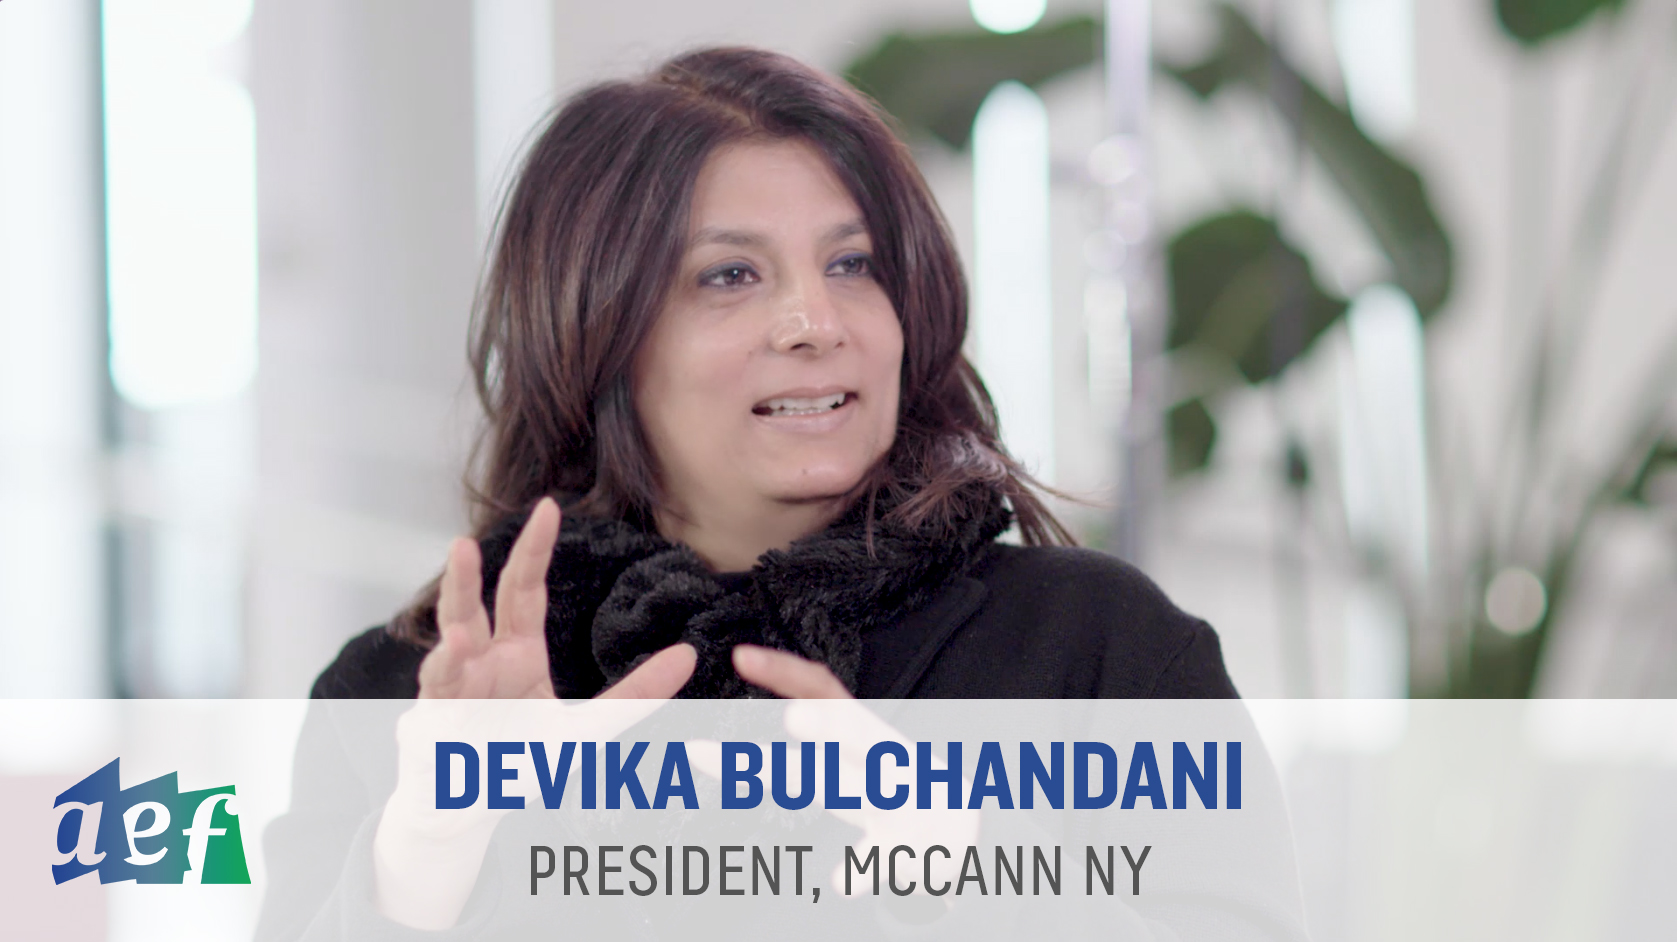 Devika Bulchandani at McCann